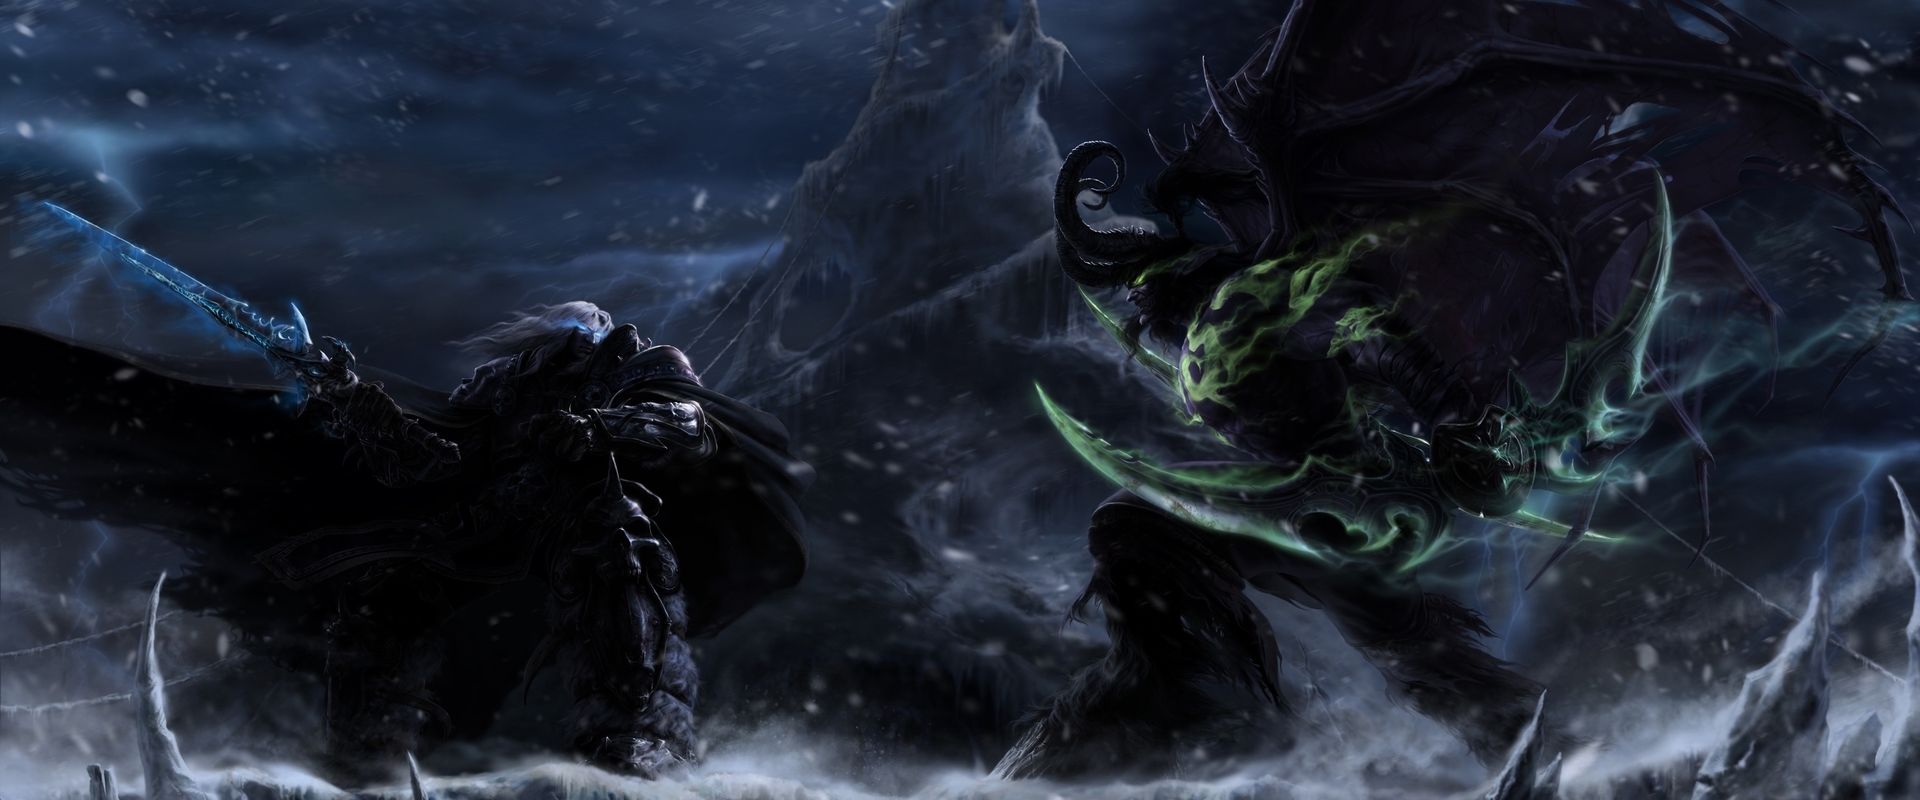 Ritkaság: augusztusi Warcraft LAN kishazánkban, 3 Blizzard játék a terítéken!